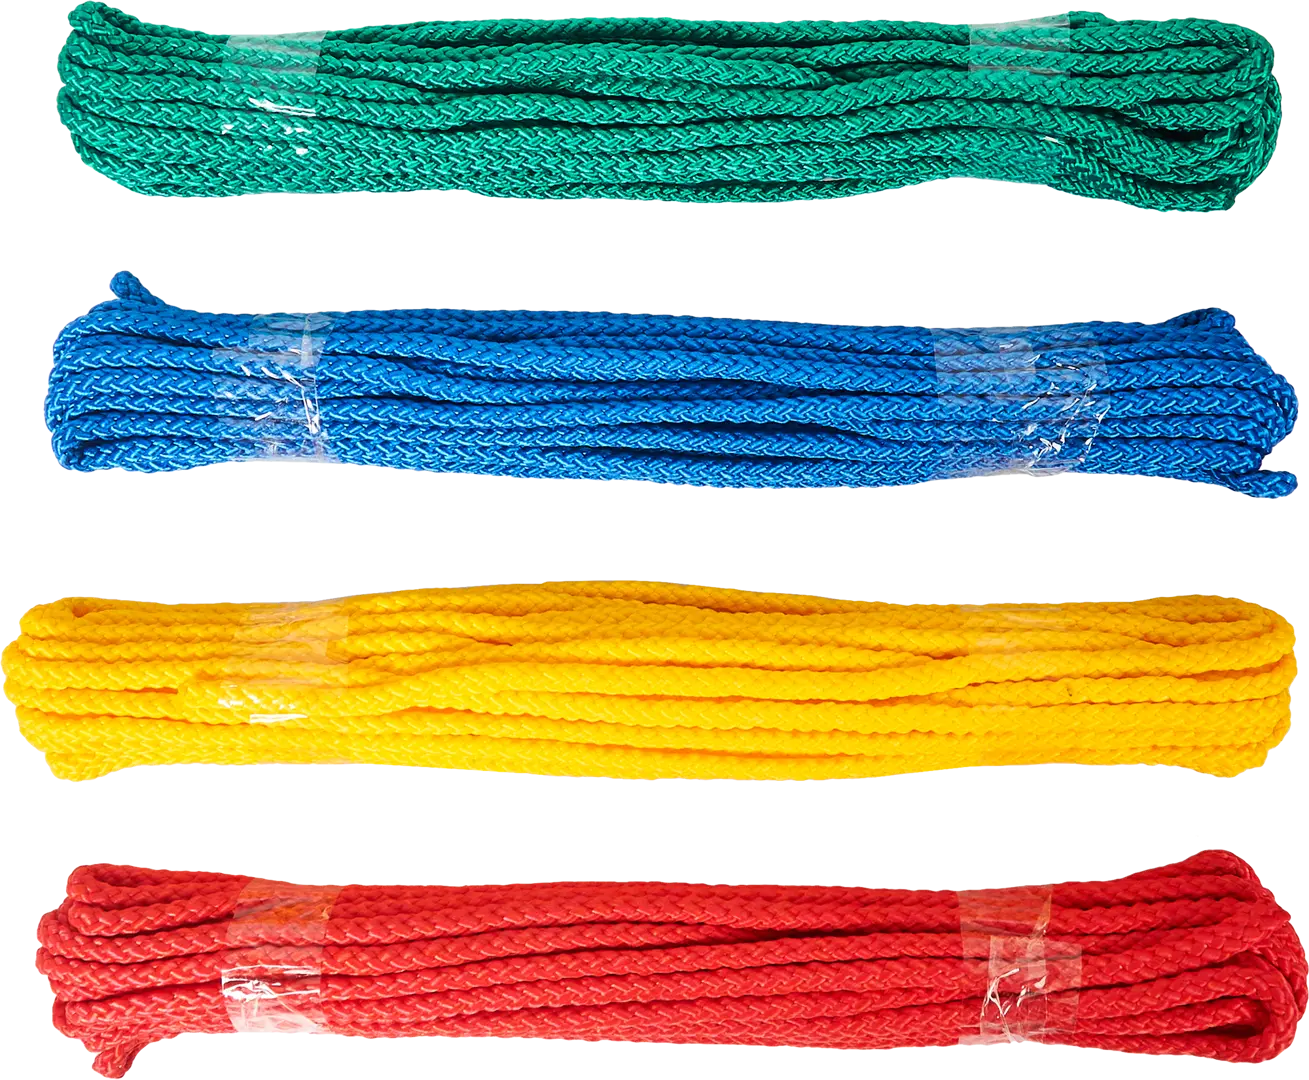 Веревка без сердечника полипропиленовая 6 мм цвет разноцветный, 10 м/уп. растяжка на коляску кроватку